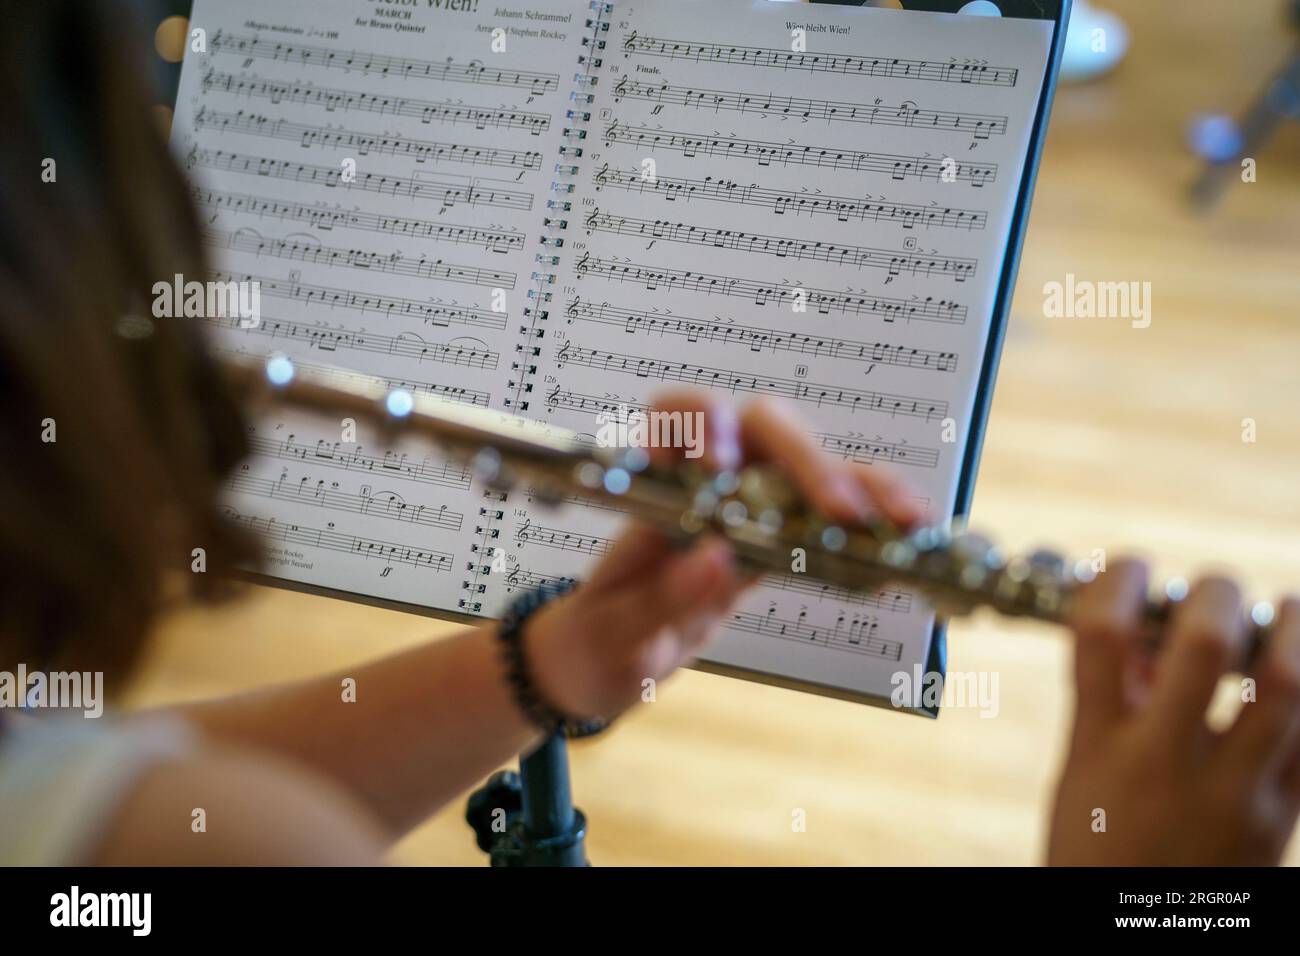 Vista posteriore di una donna che suona un flauto trasversale mentre legge uno spartito musicale Foto Stock